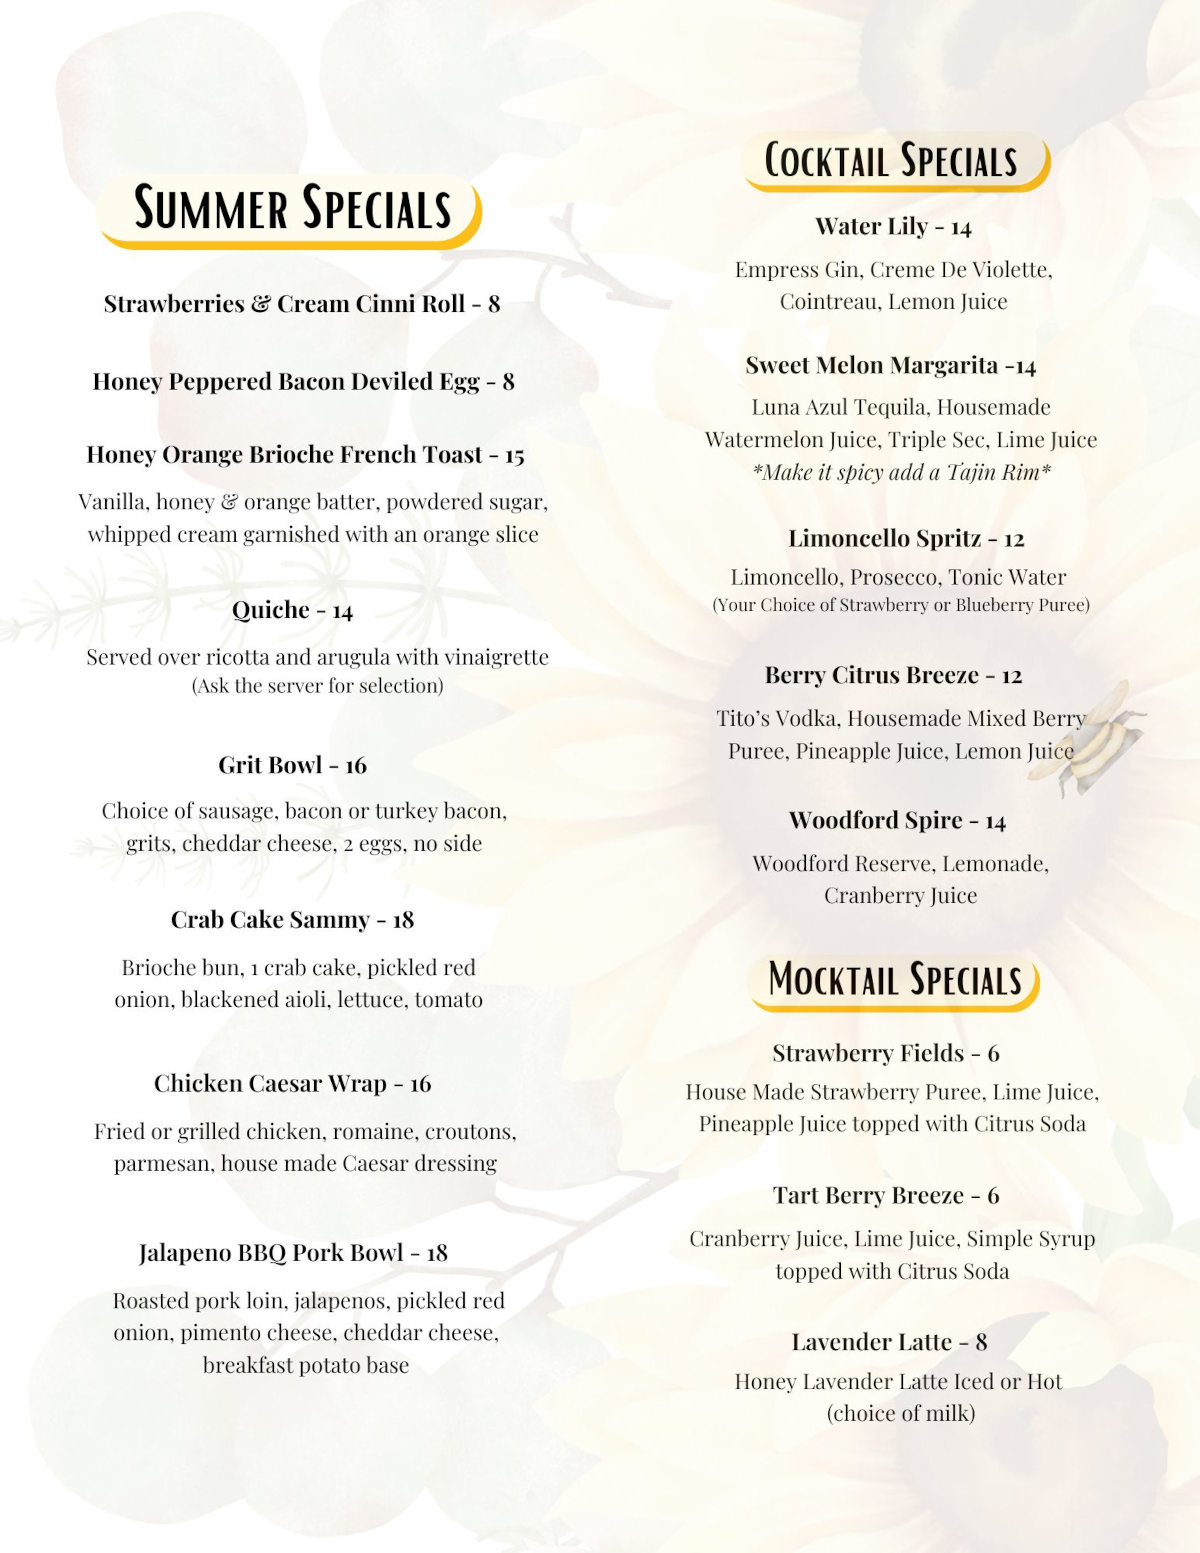 Specials menu flyer